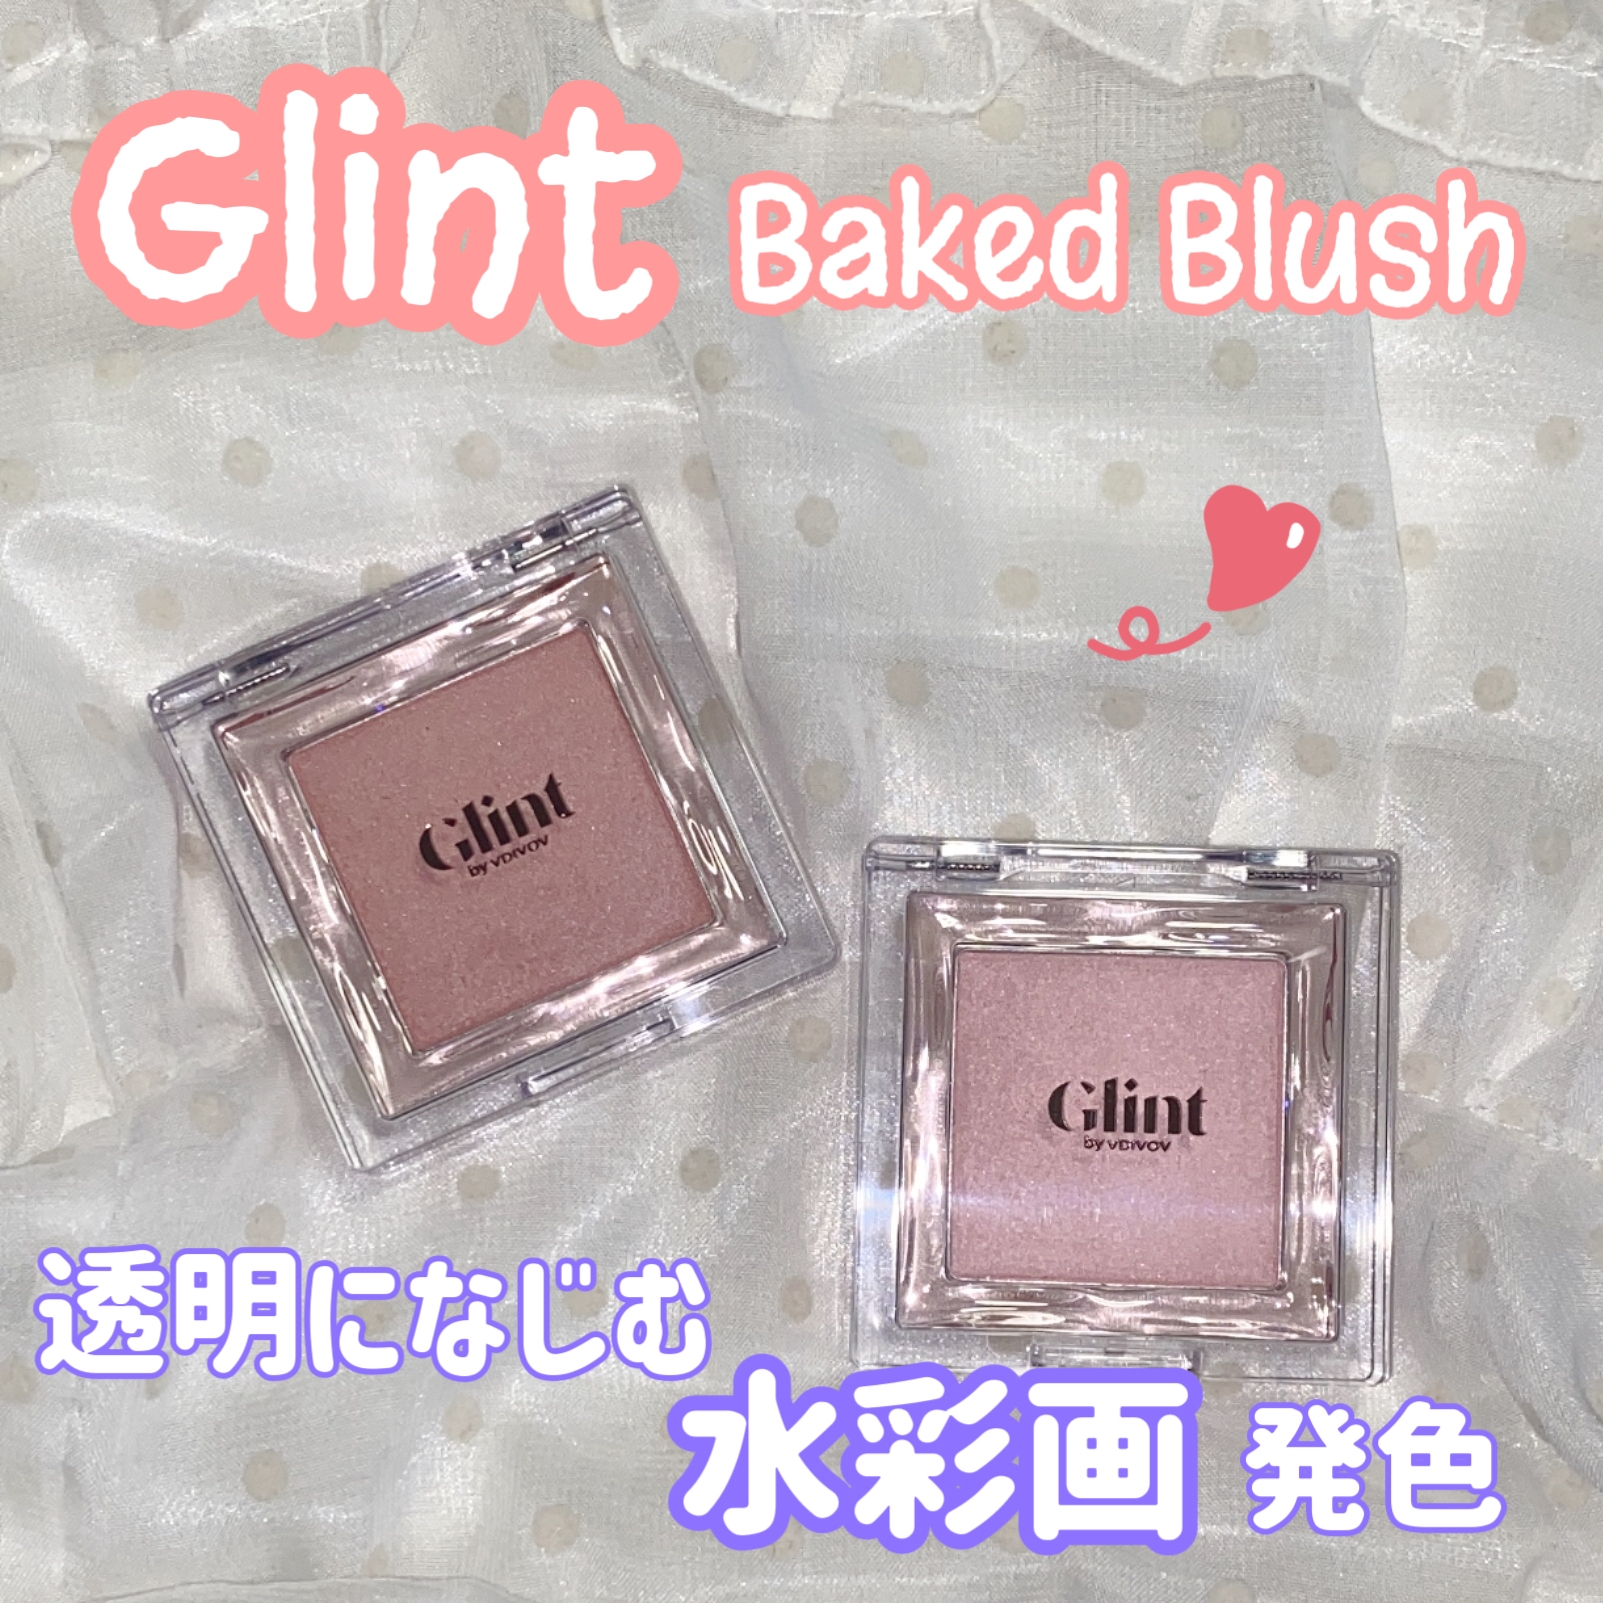 Glint(グリント) ベイクドブラッシュの良い点・メリットに関する珈琲豆♡さんの口コミ画像1